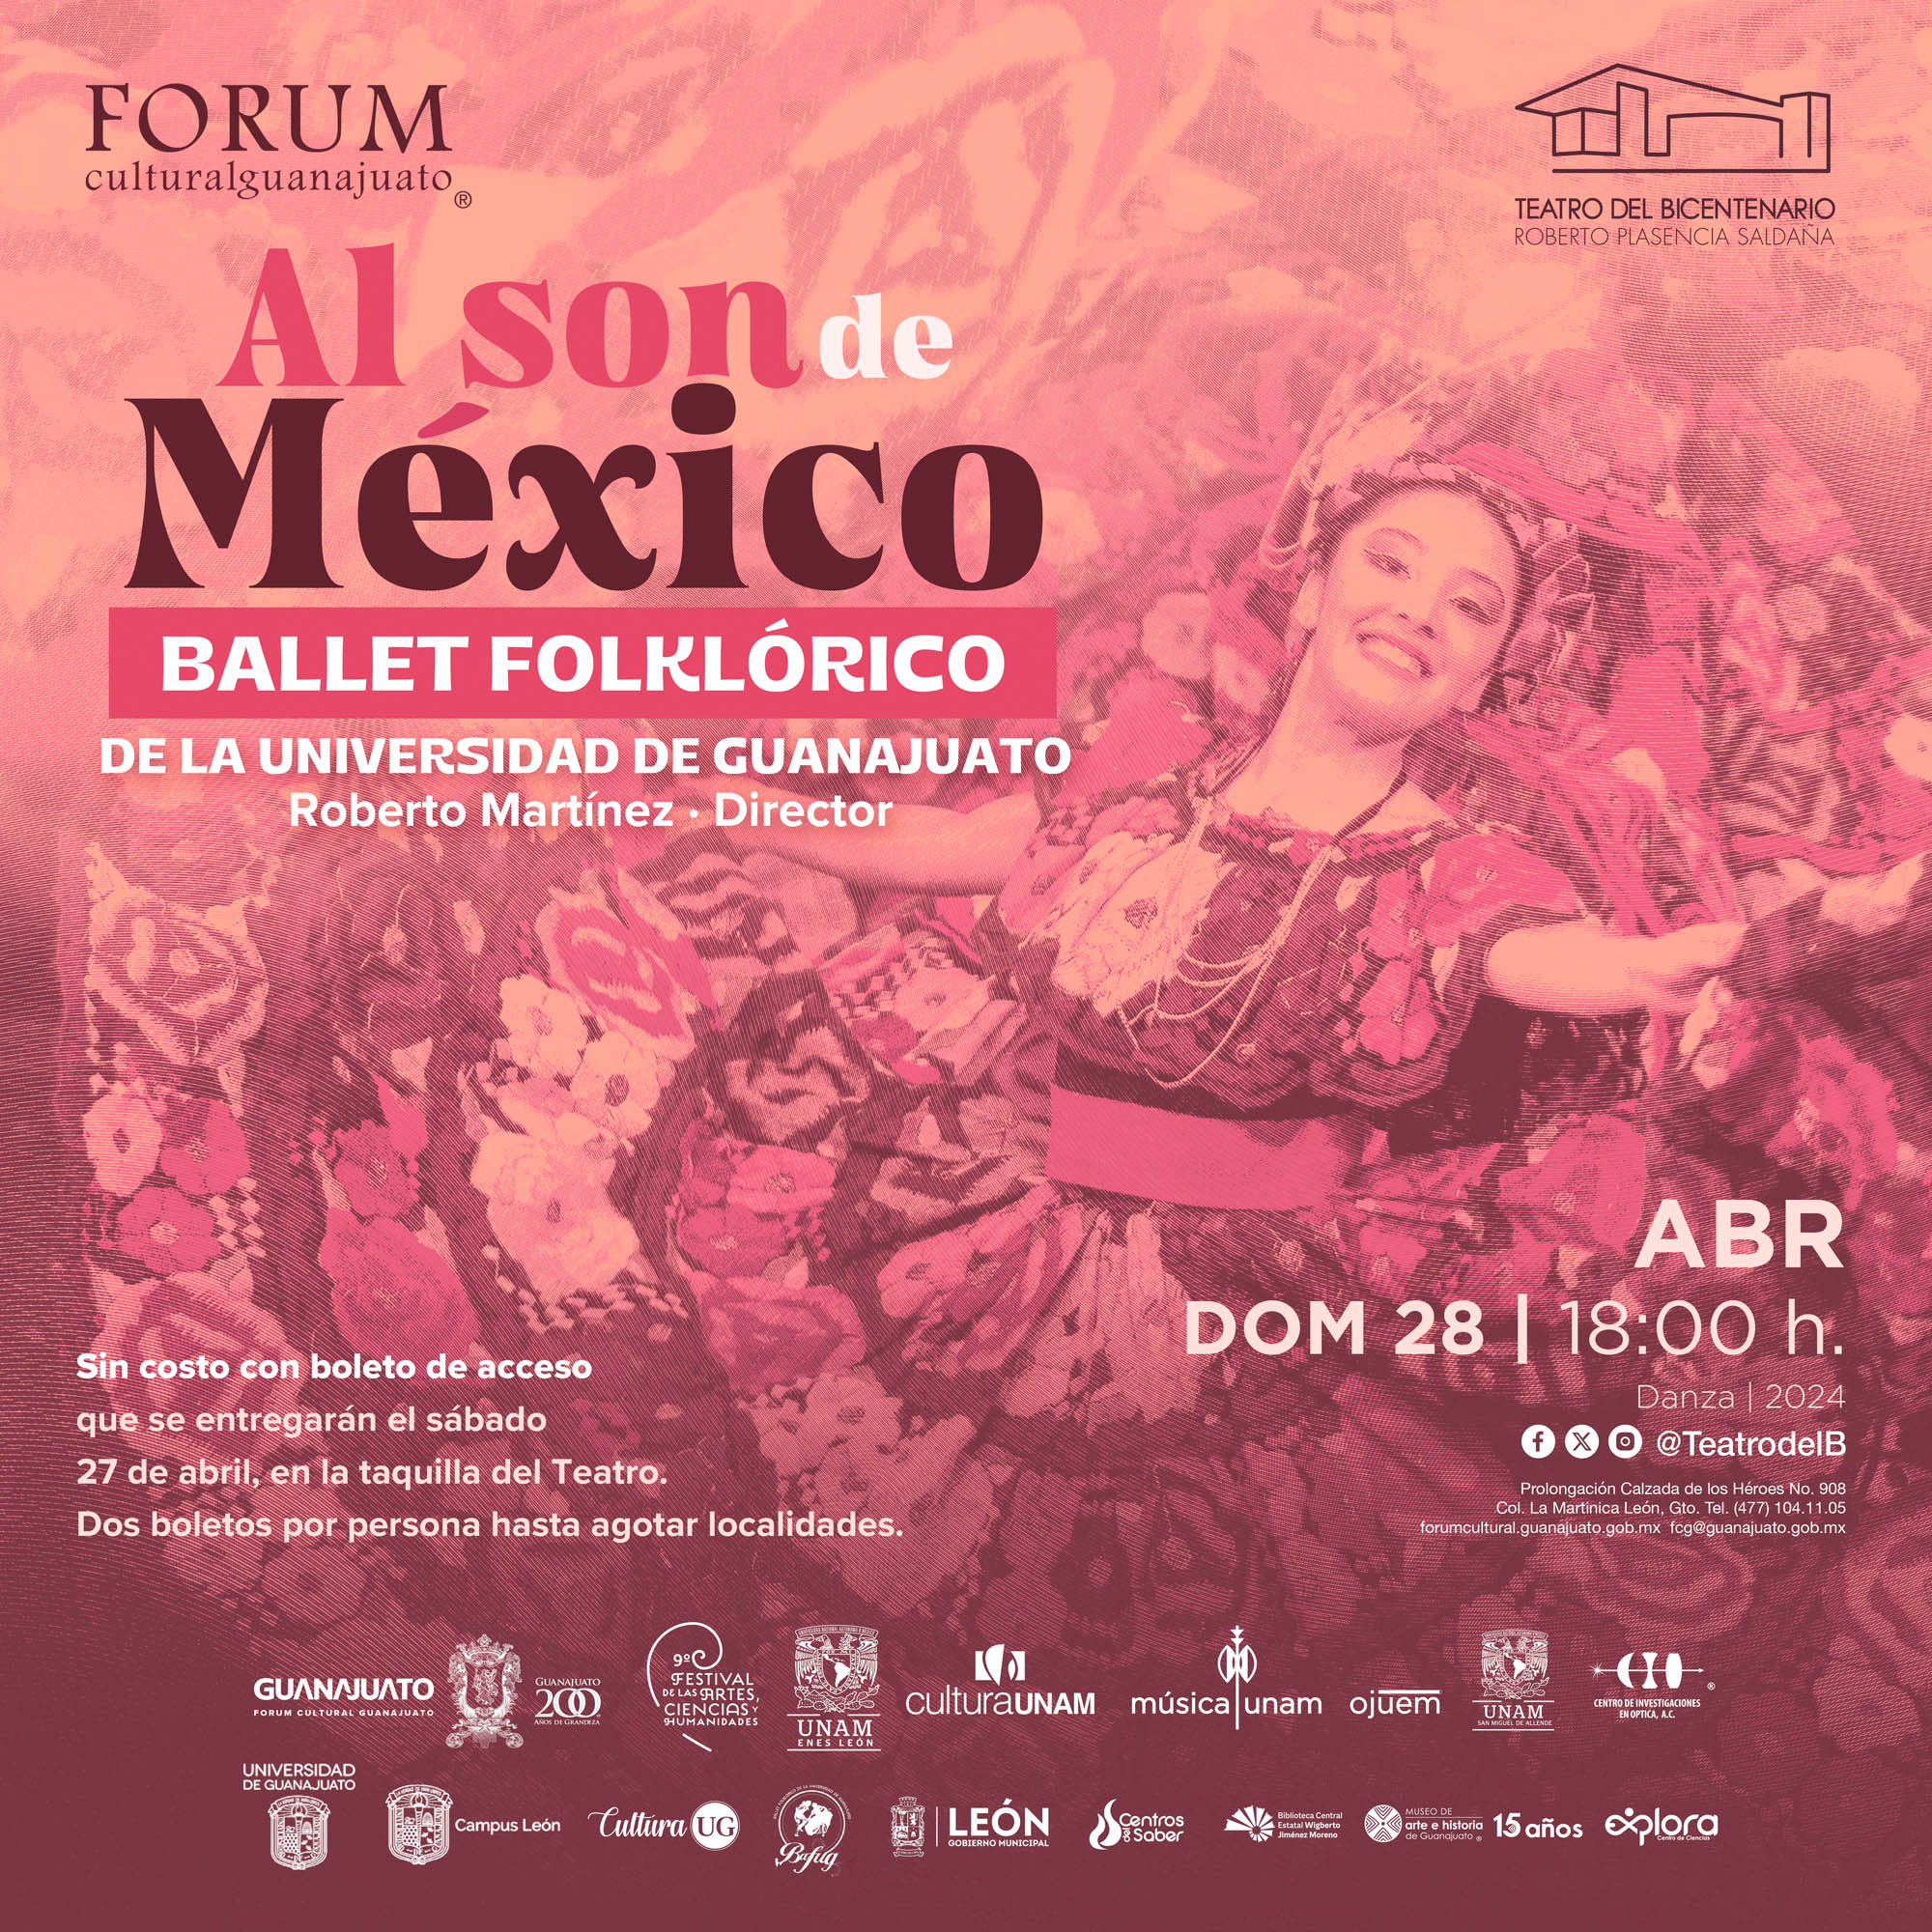 El Teatro del Bicentenario Roberto Plasencia Saldaña presenta  al Ballet Folklórico de la Universidad de Guanajuato con 